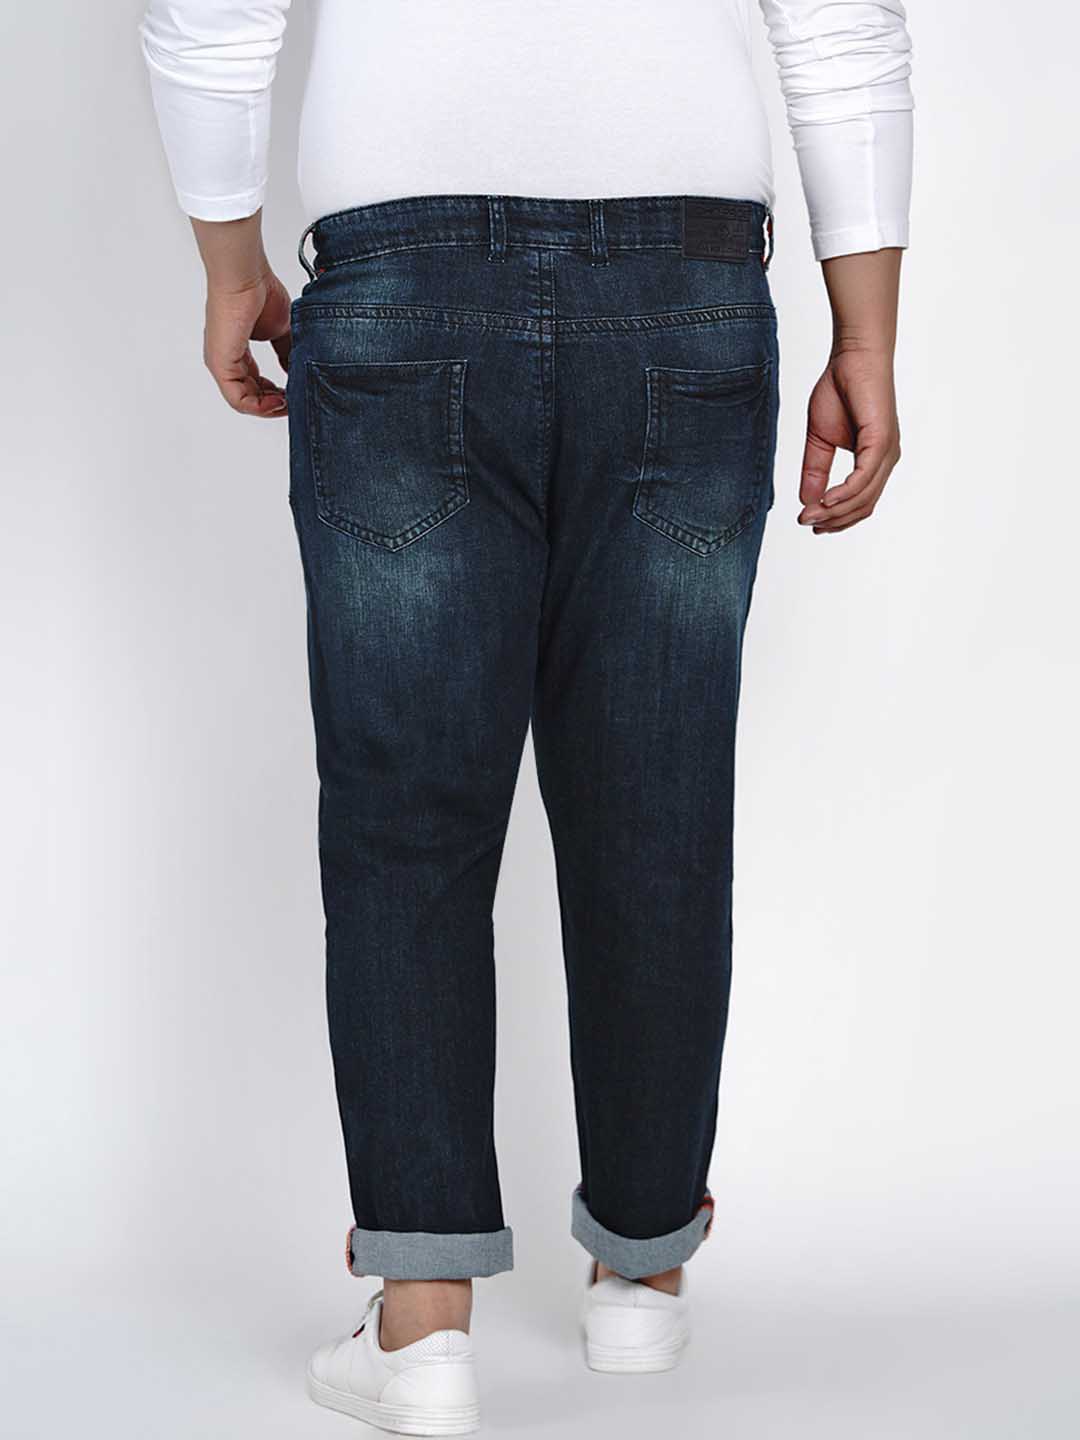 affordables/jeans/JPJ2520/jpj2520-5.jpg